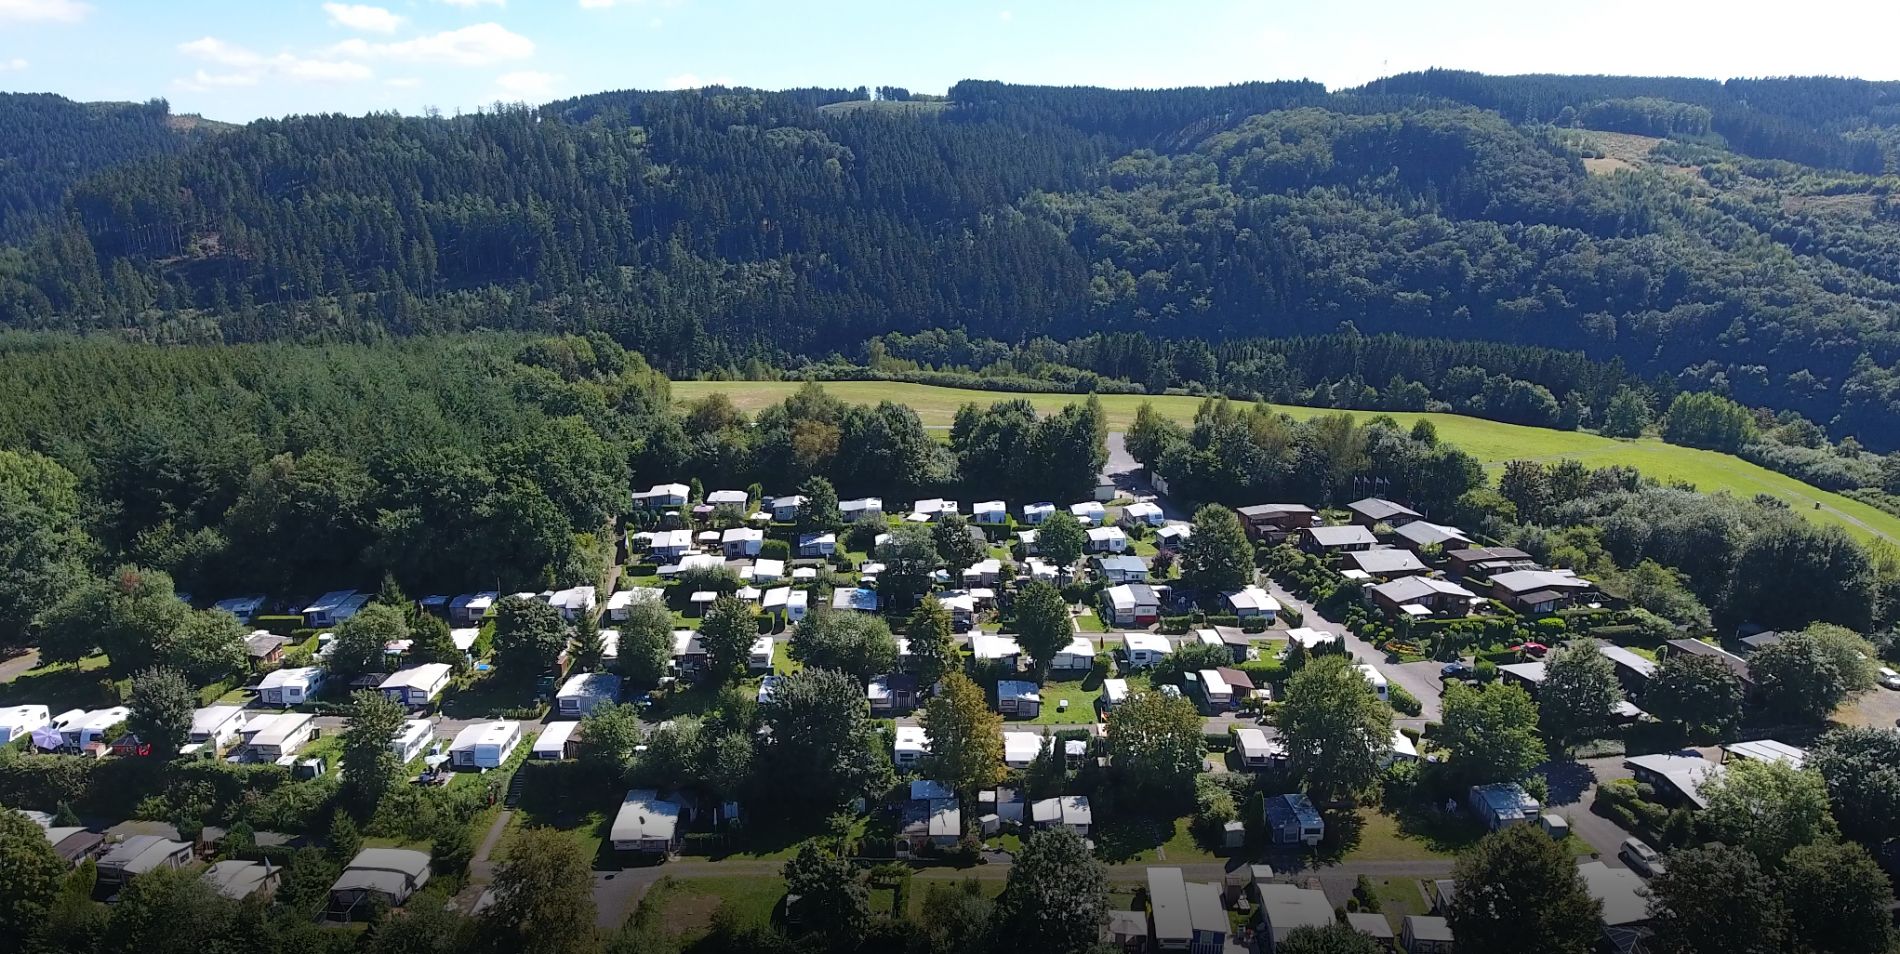 Campingplatz Hof Biggen - Jaarplaatsen op camping Hof Biggen 